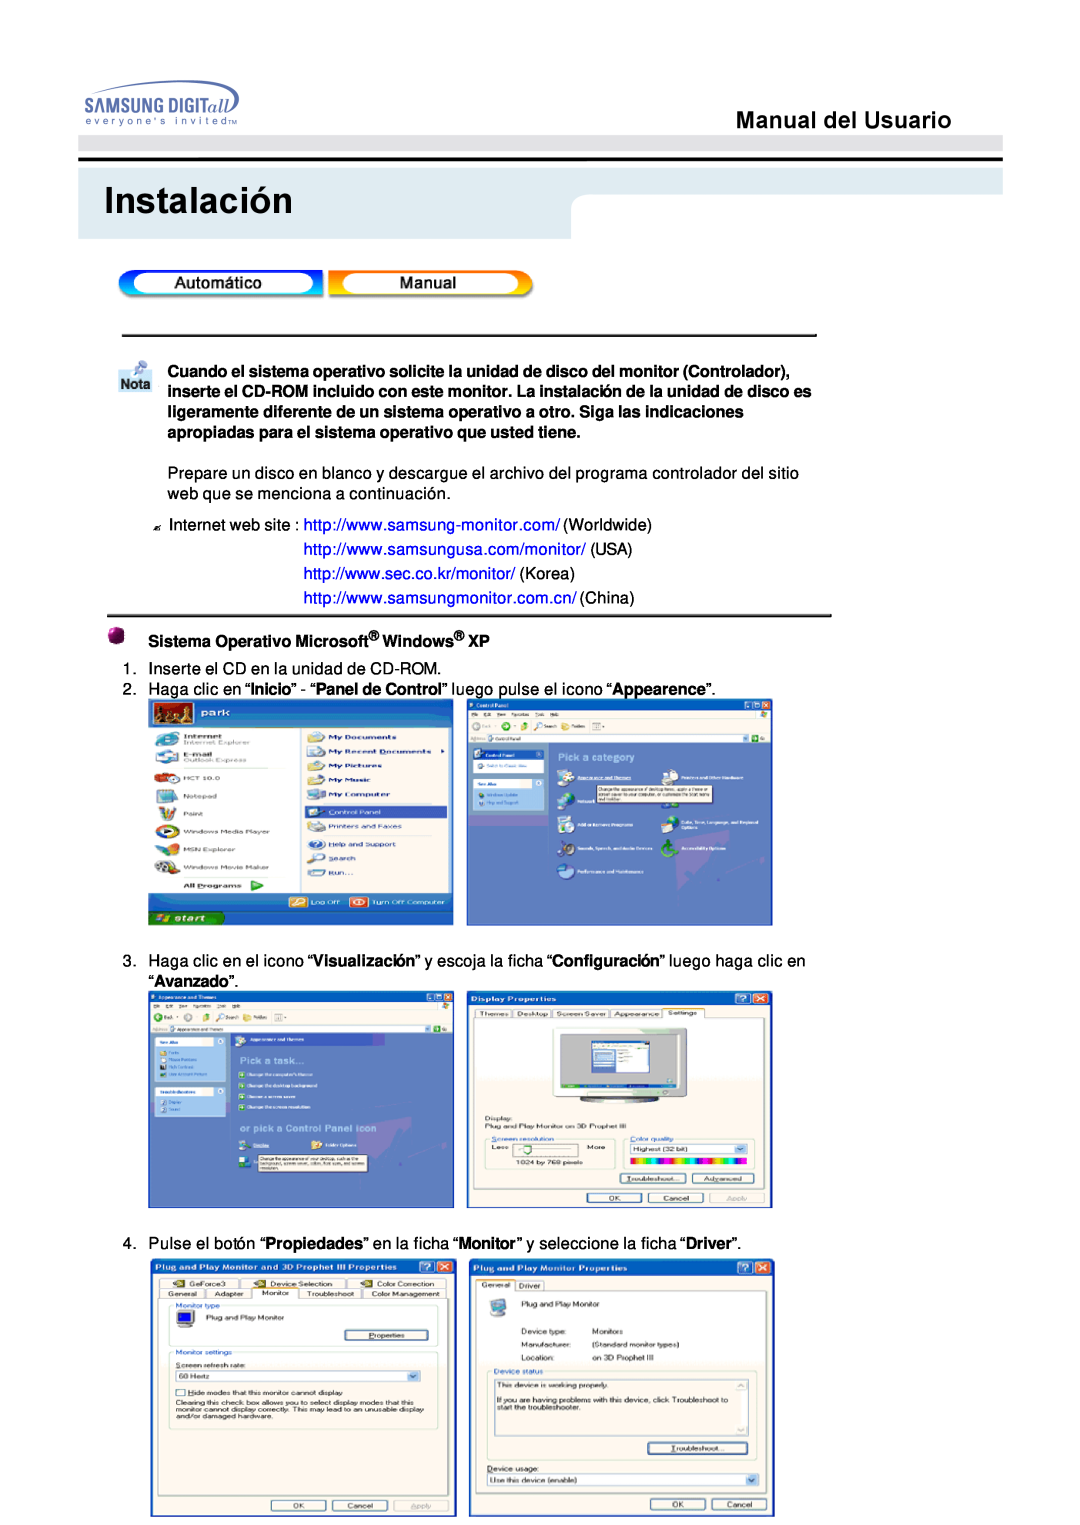 Samsung 153S manual Instalación, Manual del Usuario, Sistema Operativo Microsoft Windows XP 